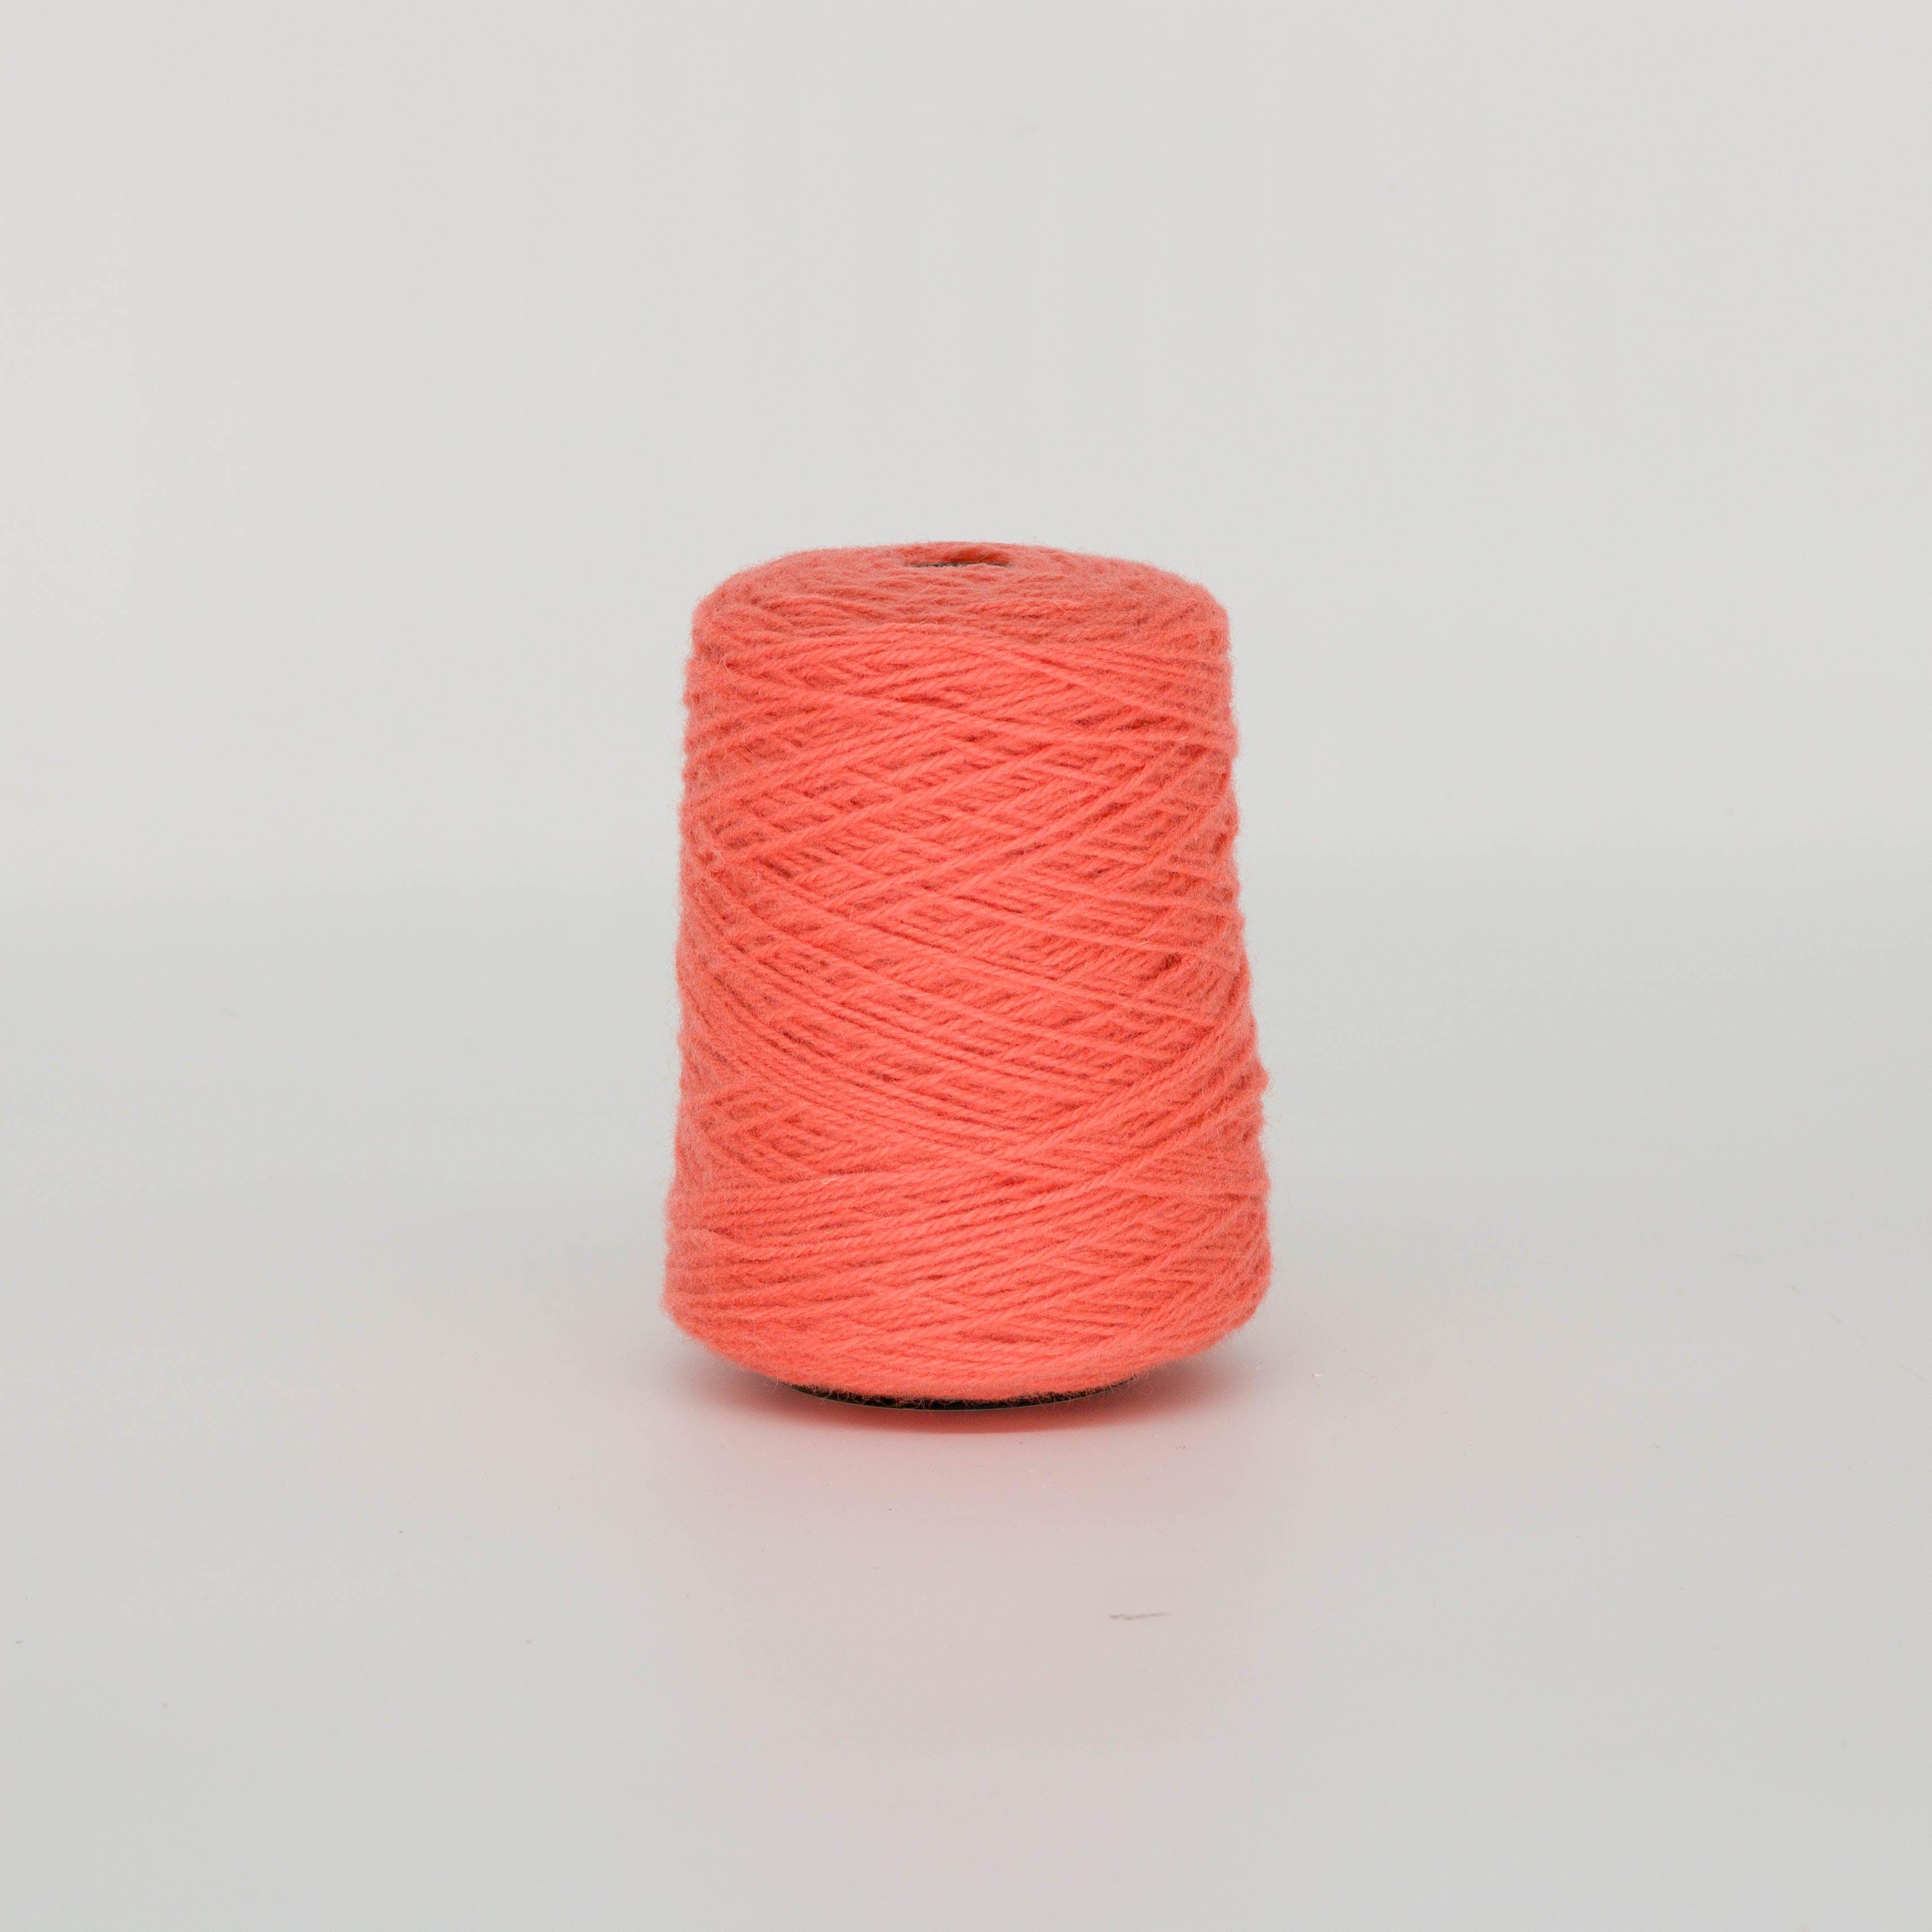 Raw salmon 100% Wool Tufting Yarn On Cone (805c) - Tuftingshop